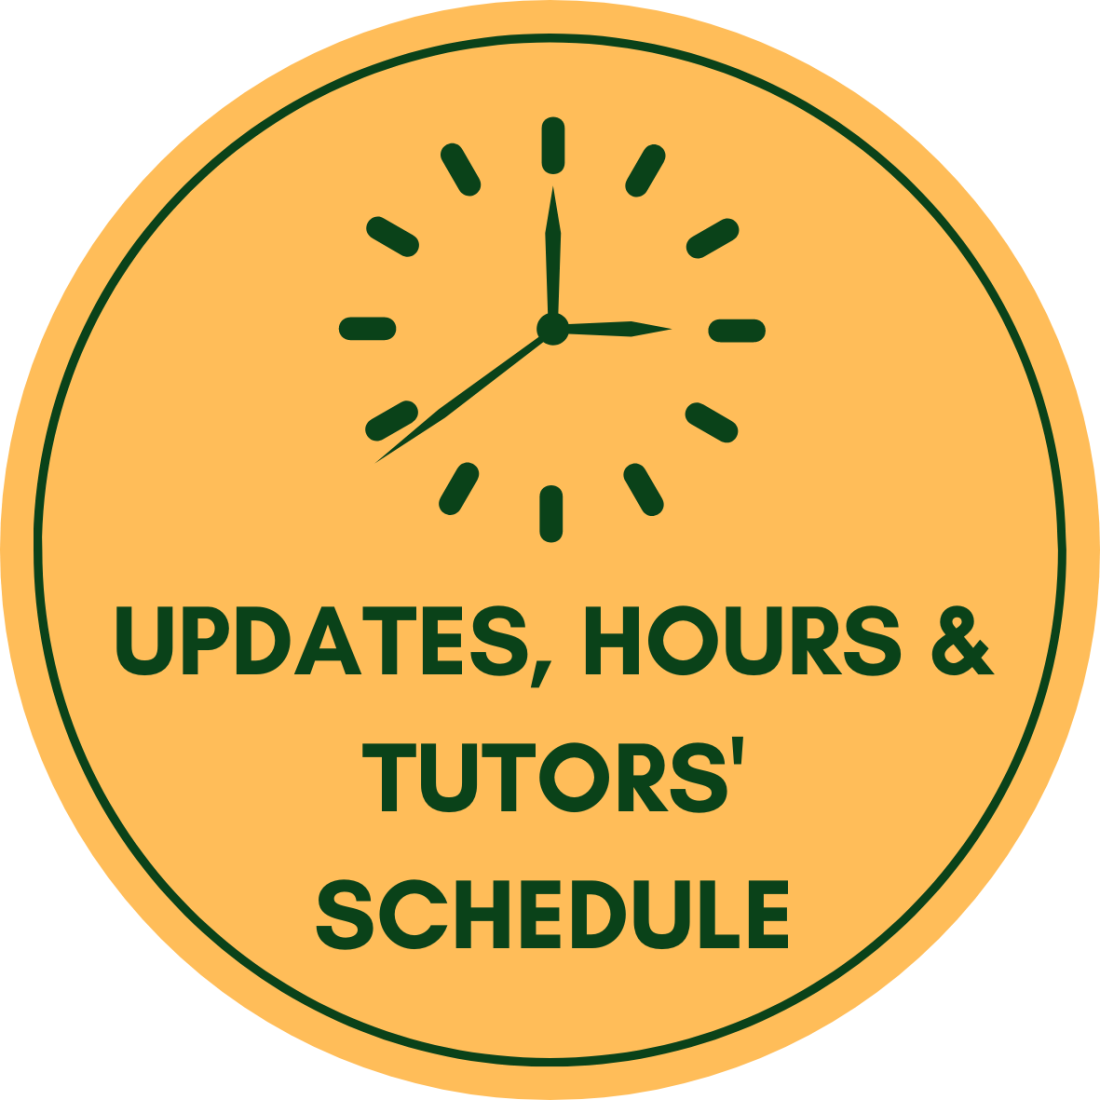 Updates, Hours and Tutors' Schedule